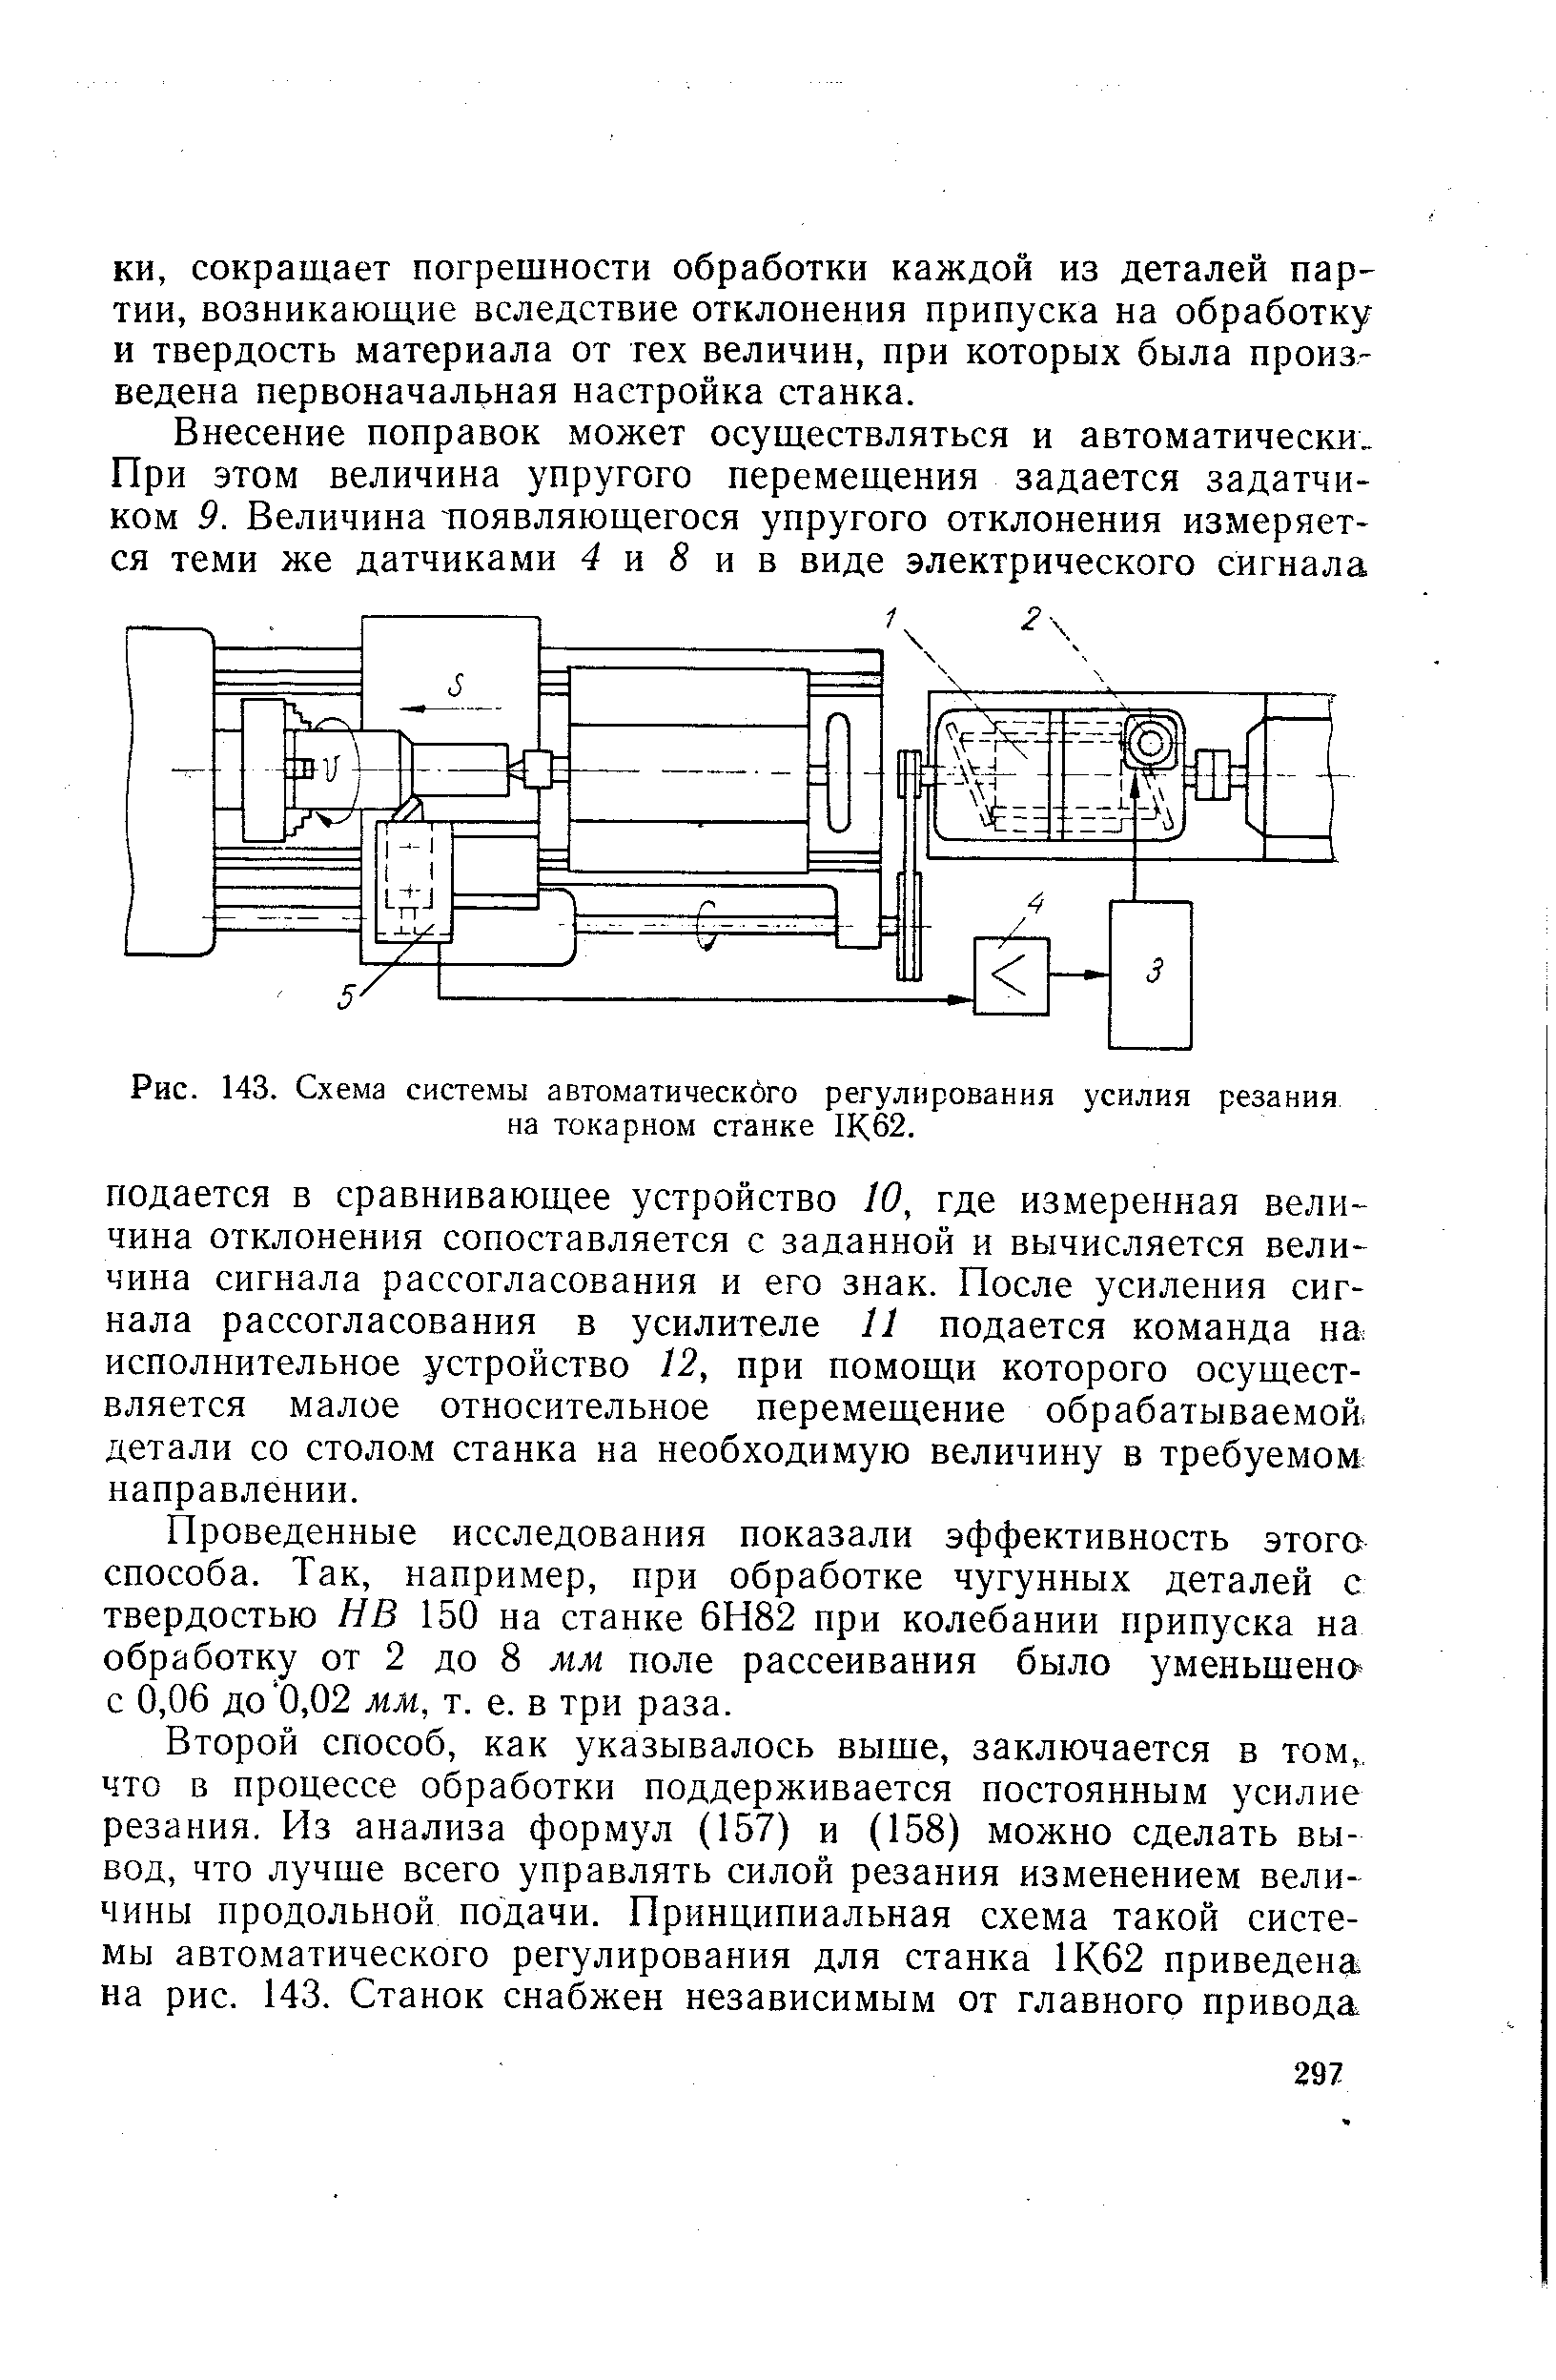 Рис. 143. Схема системы автоматического регулирования усилия резания на токарном станке Щ62.
